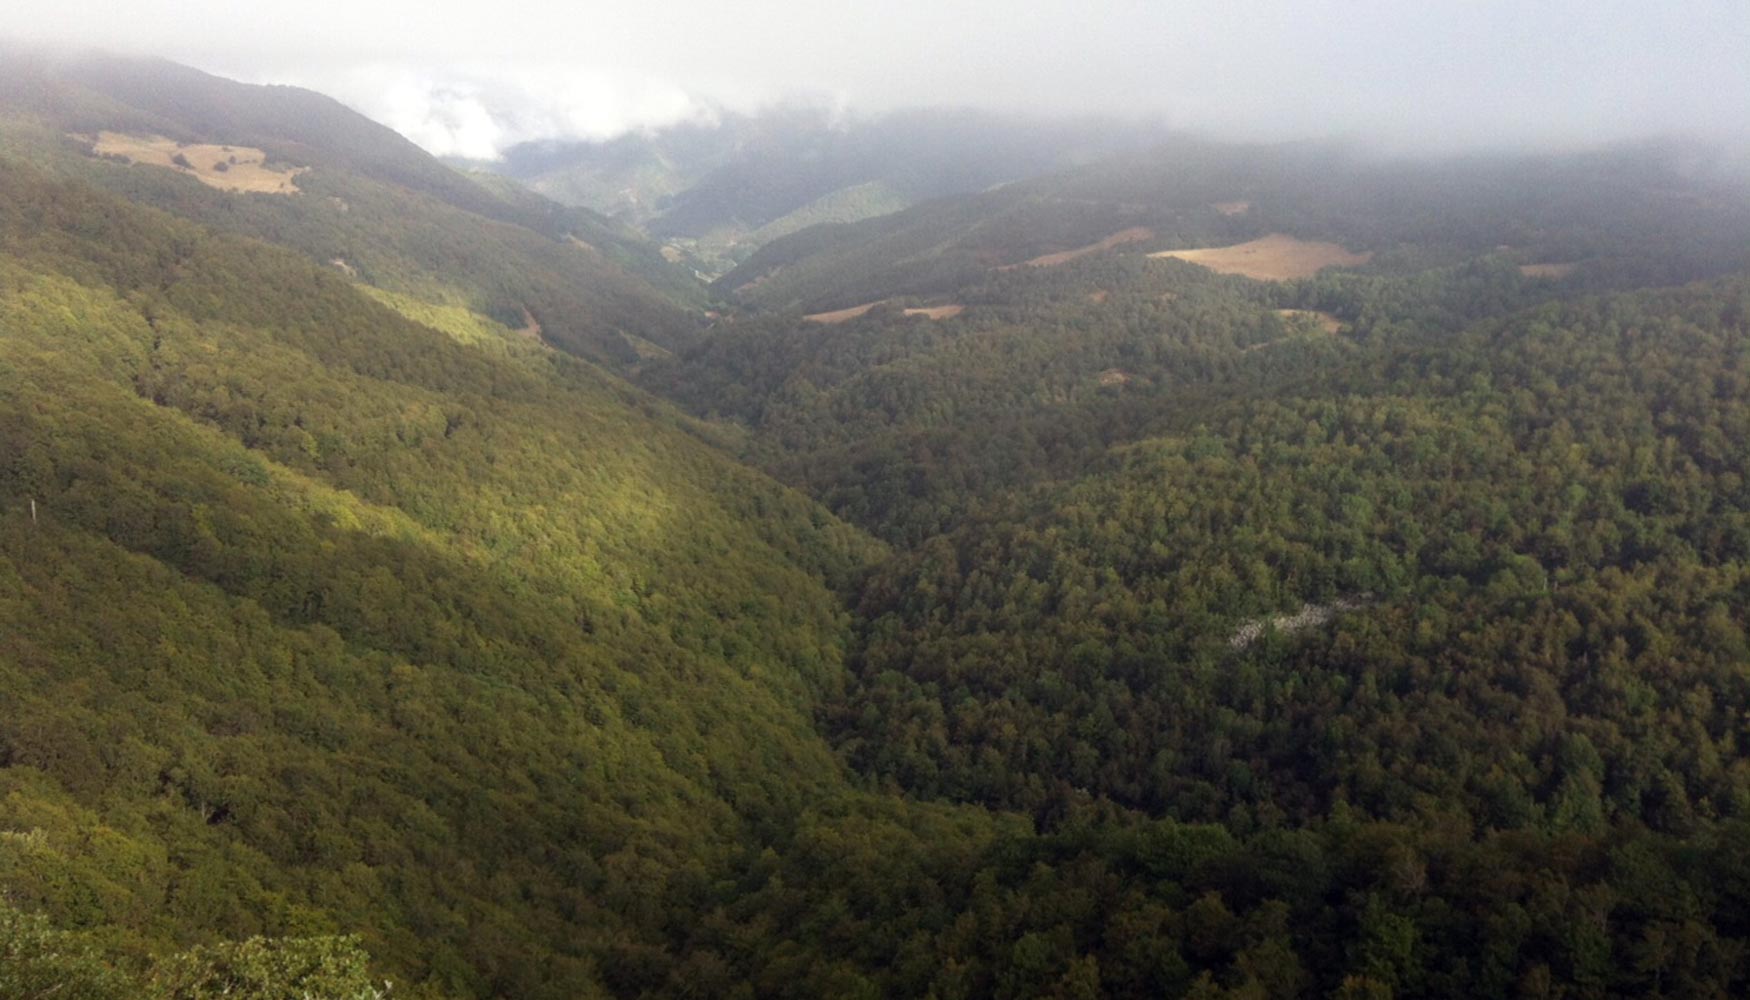 Paisaje de monte cntabro: El papel de los bosques como sumidero: Un monte gestionado aumenta su capacidad de fijar carbono...